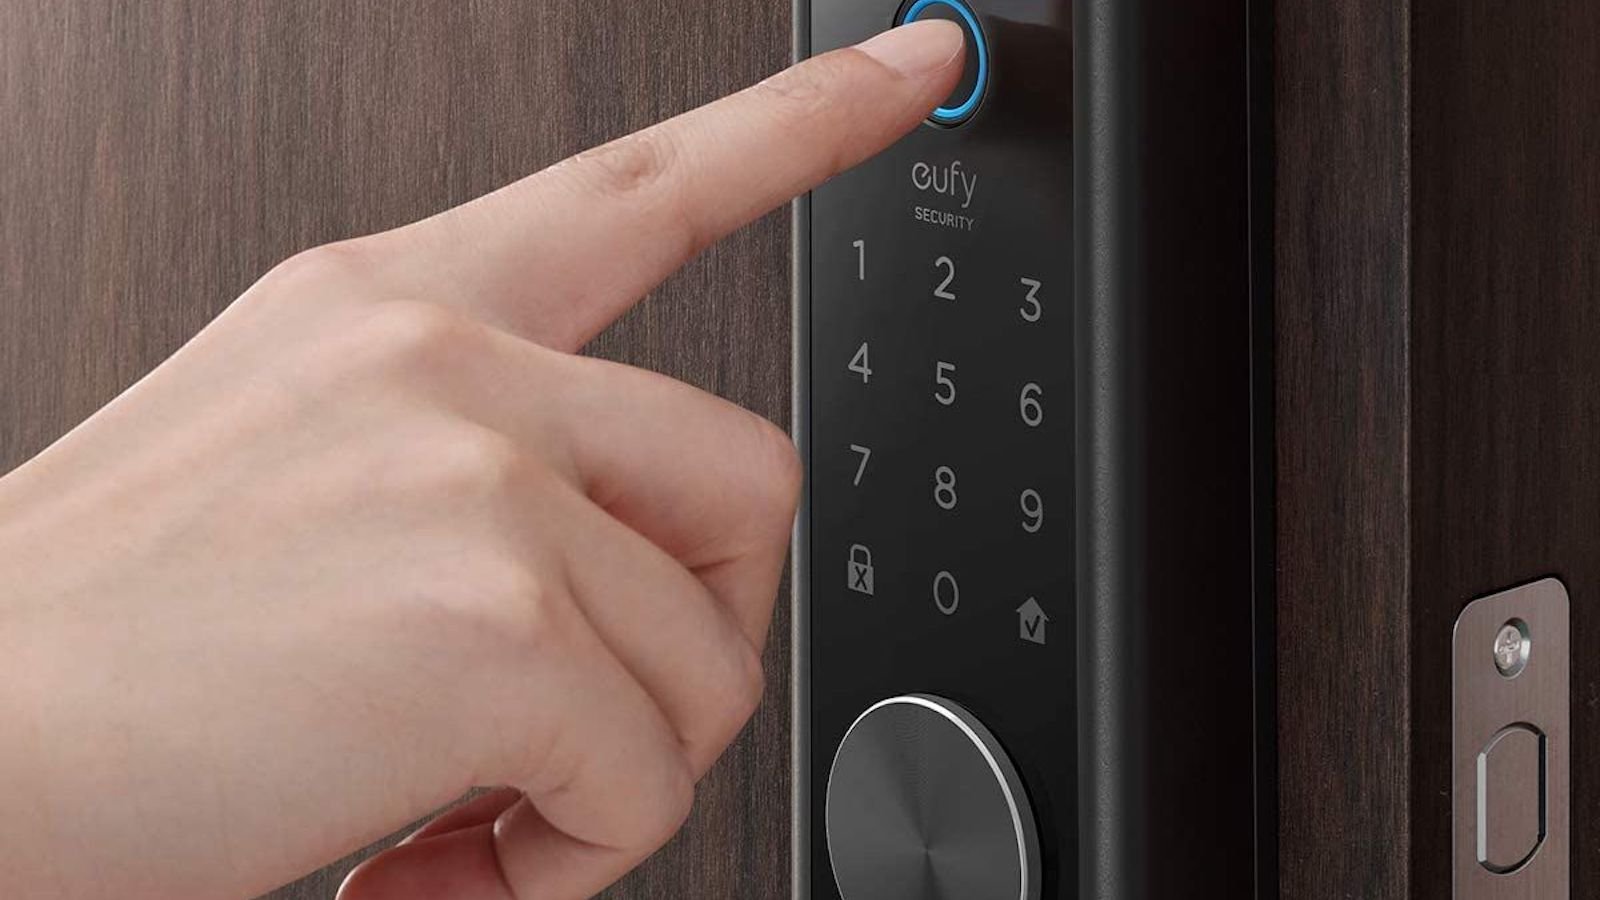 eufy Smart Lock Touch door fingerprint scanner automatically locks your door behind you